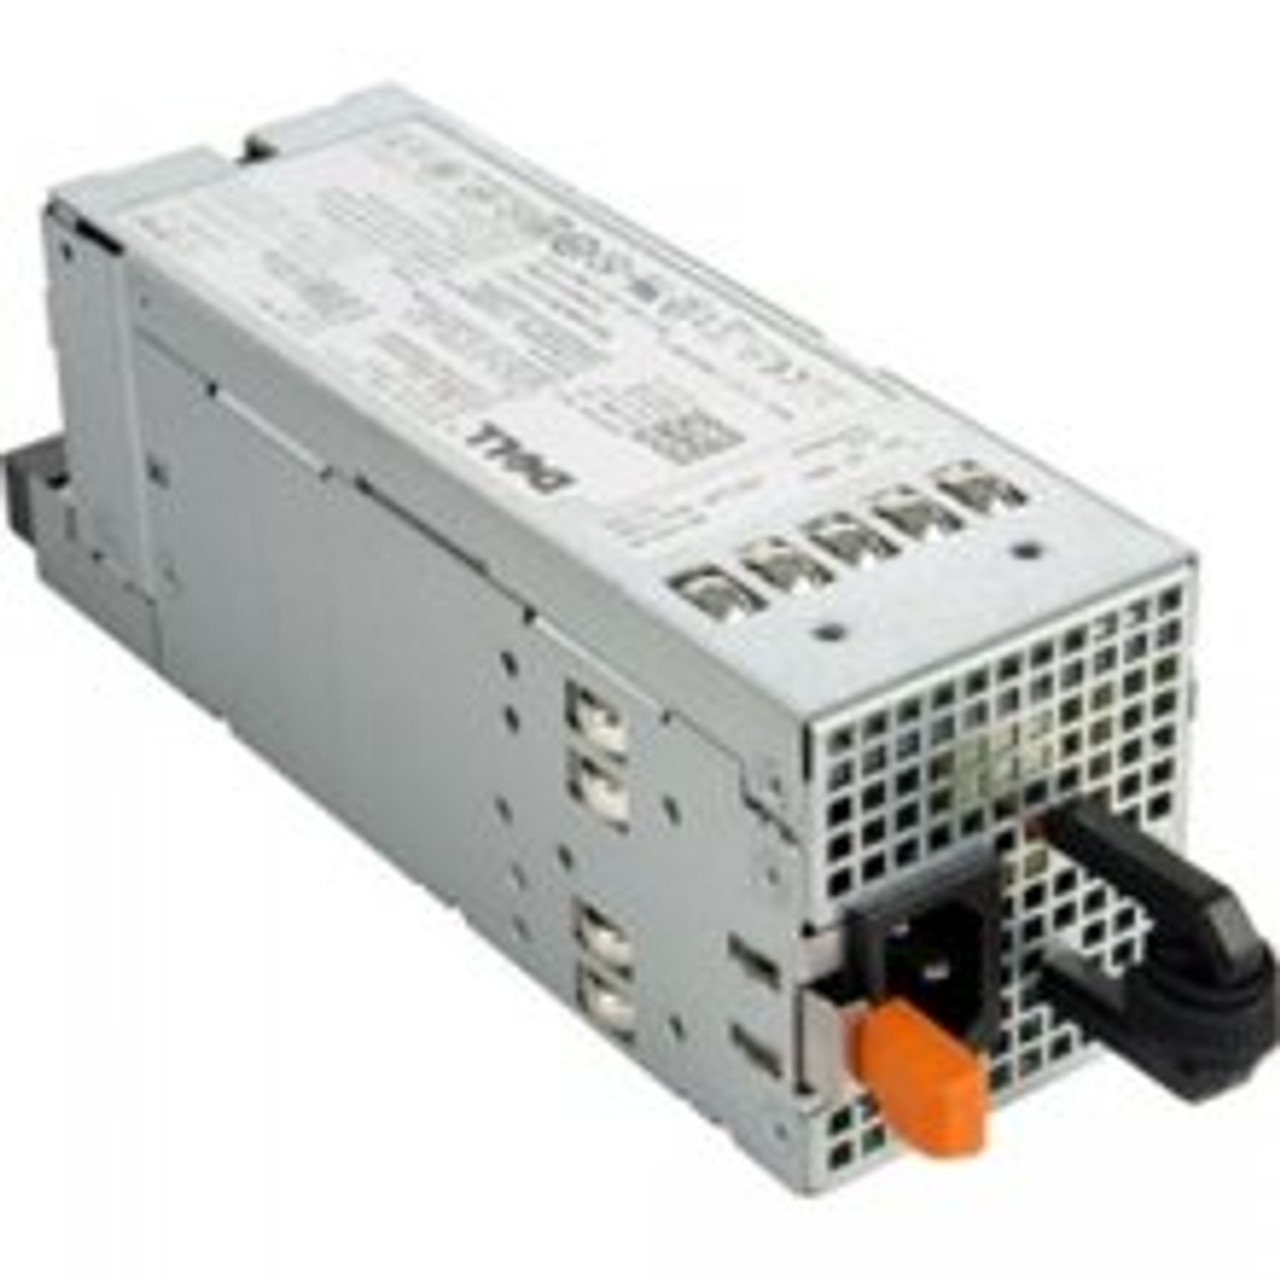 DELL VT6G4 870 Watt Redundant Power Supply For Poweredge R710 / T610